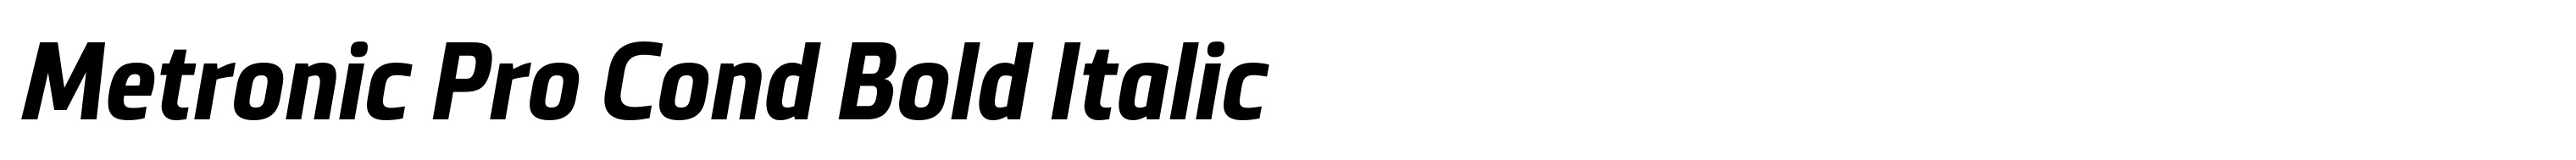 Metronic Pro Cond Bold Italic